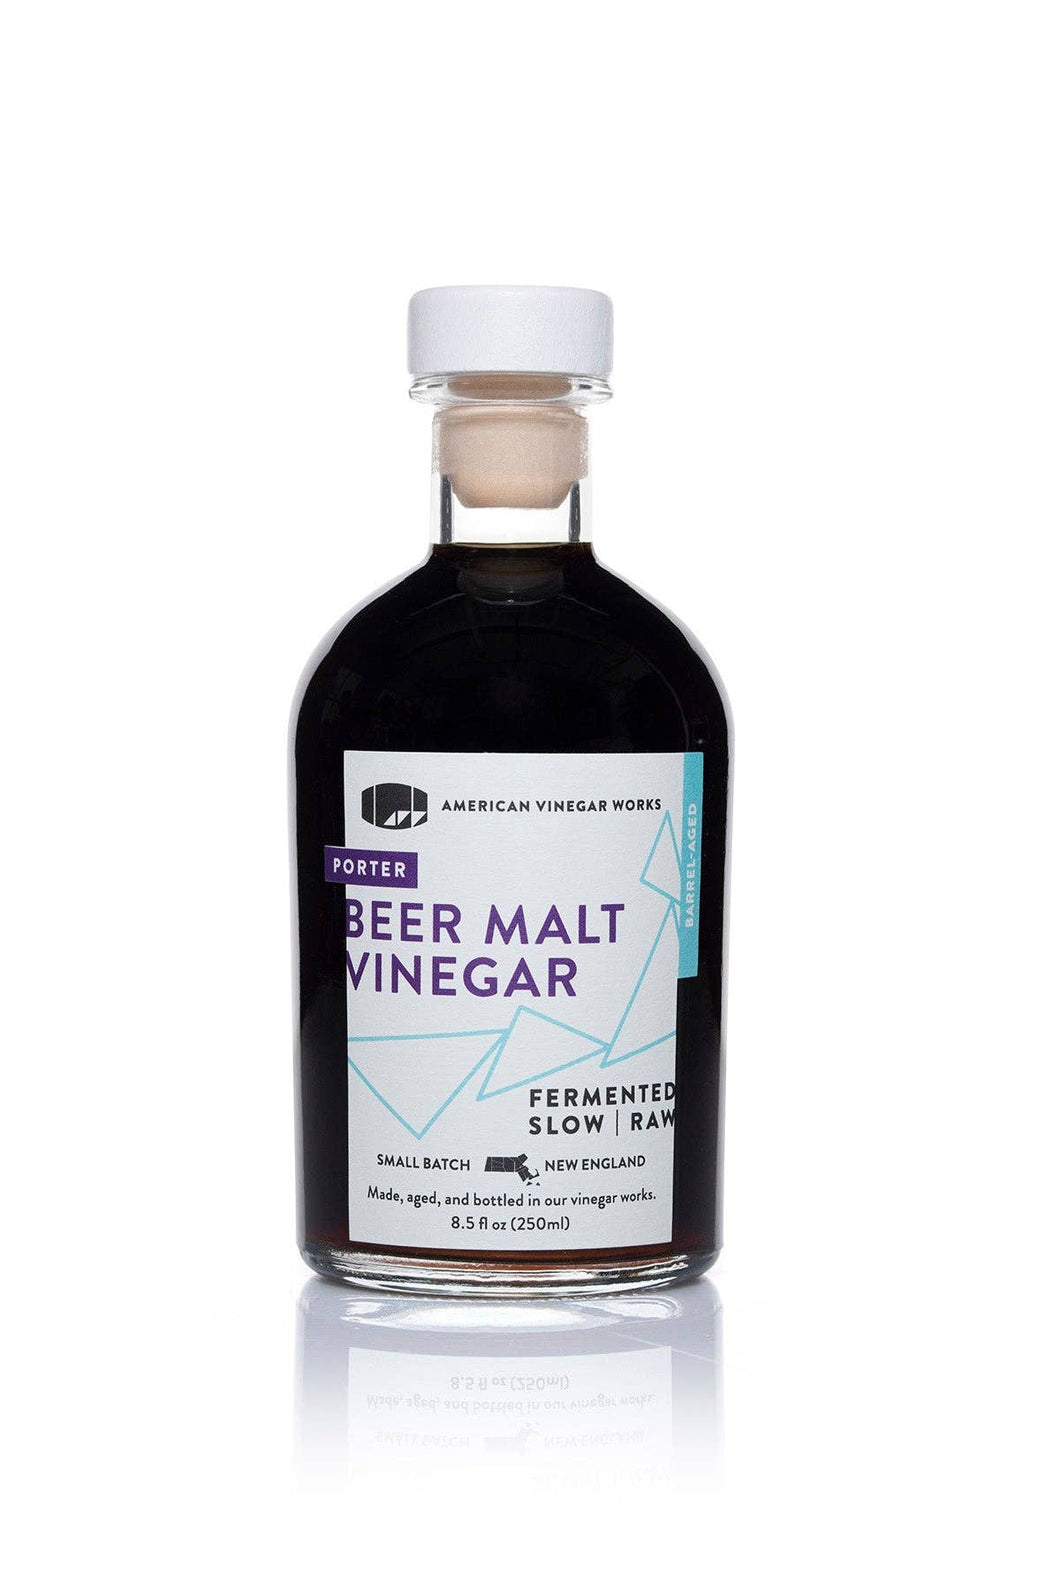 American Vinegar Works - Porter Beer Malt Vinegar